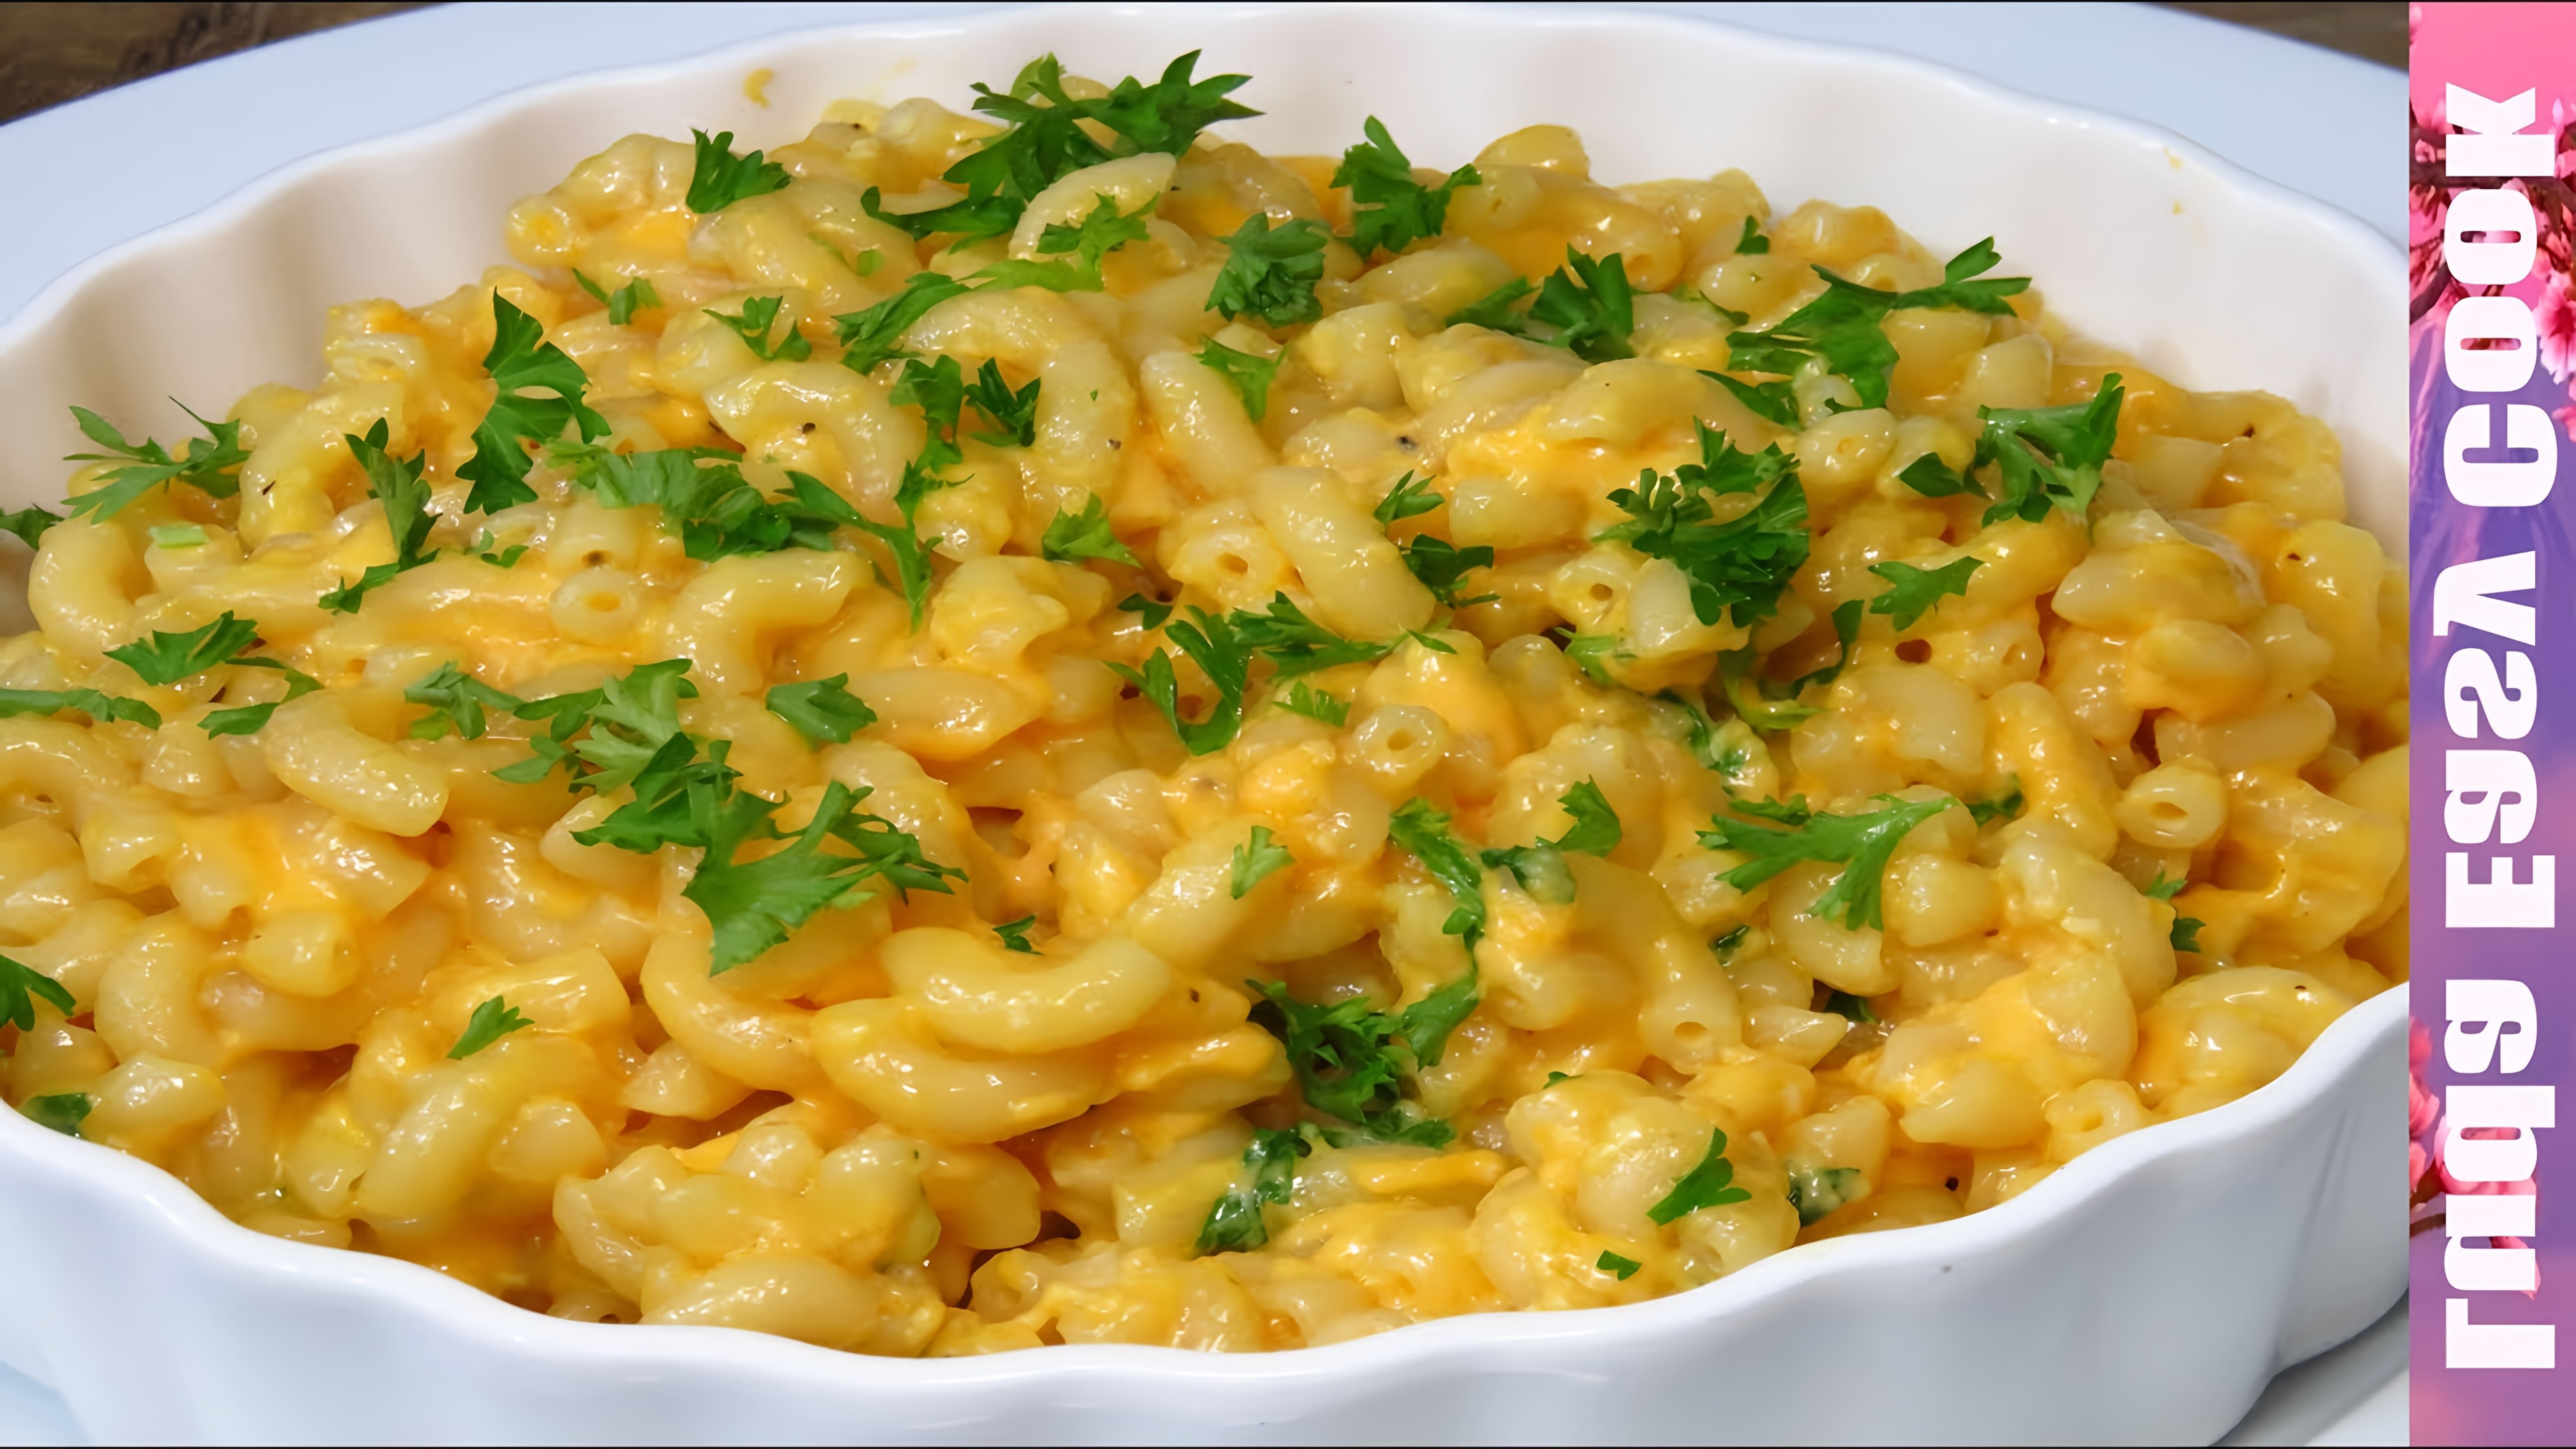 В этом видео демонстрируется простой и быстрый рецепт приготовления макарон с сыром